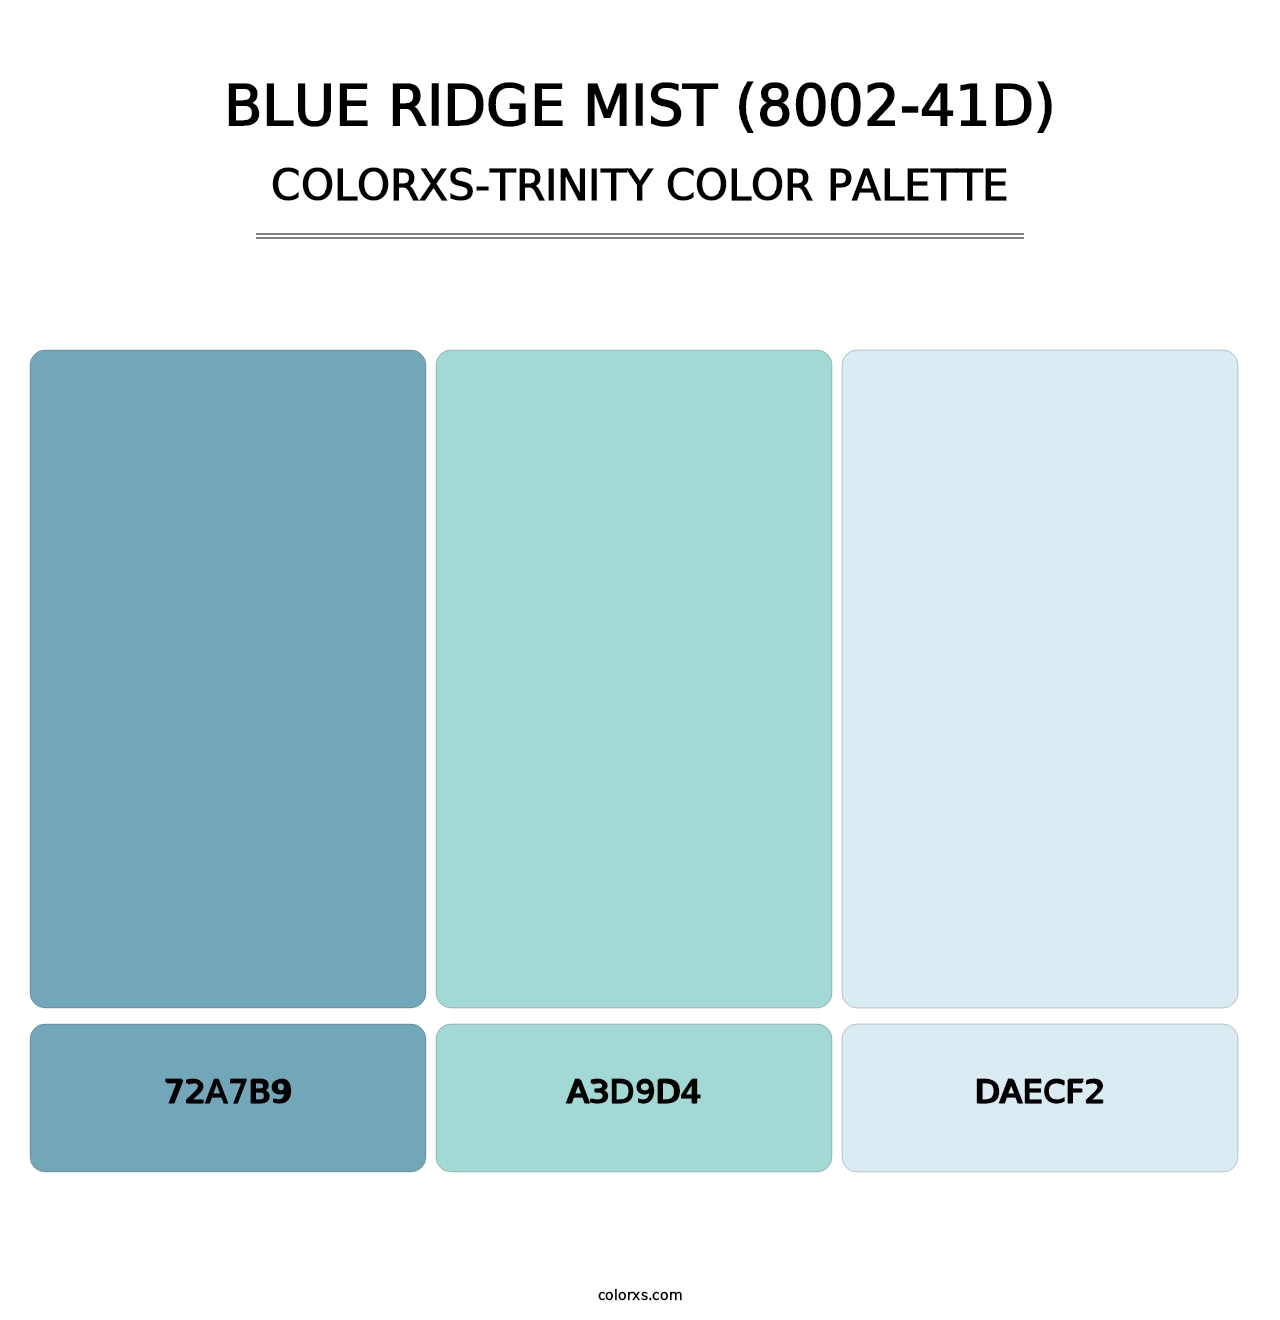 Blue Ridge Mist (8002-41D) - Colorxs Trinity Palette